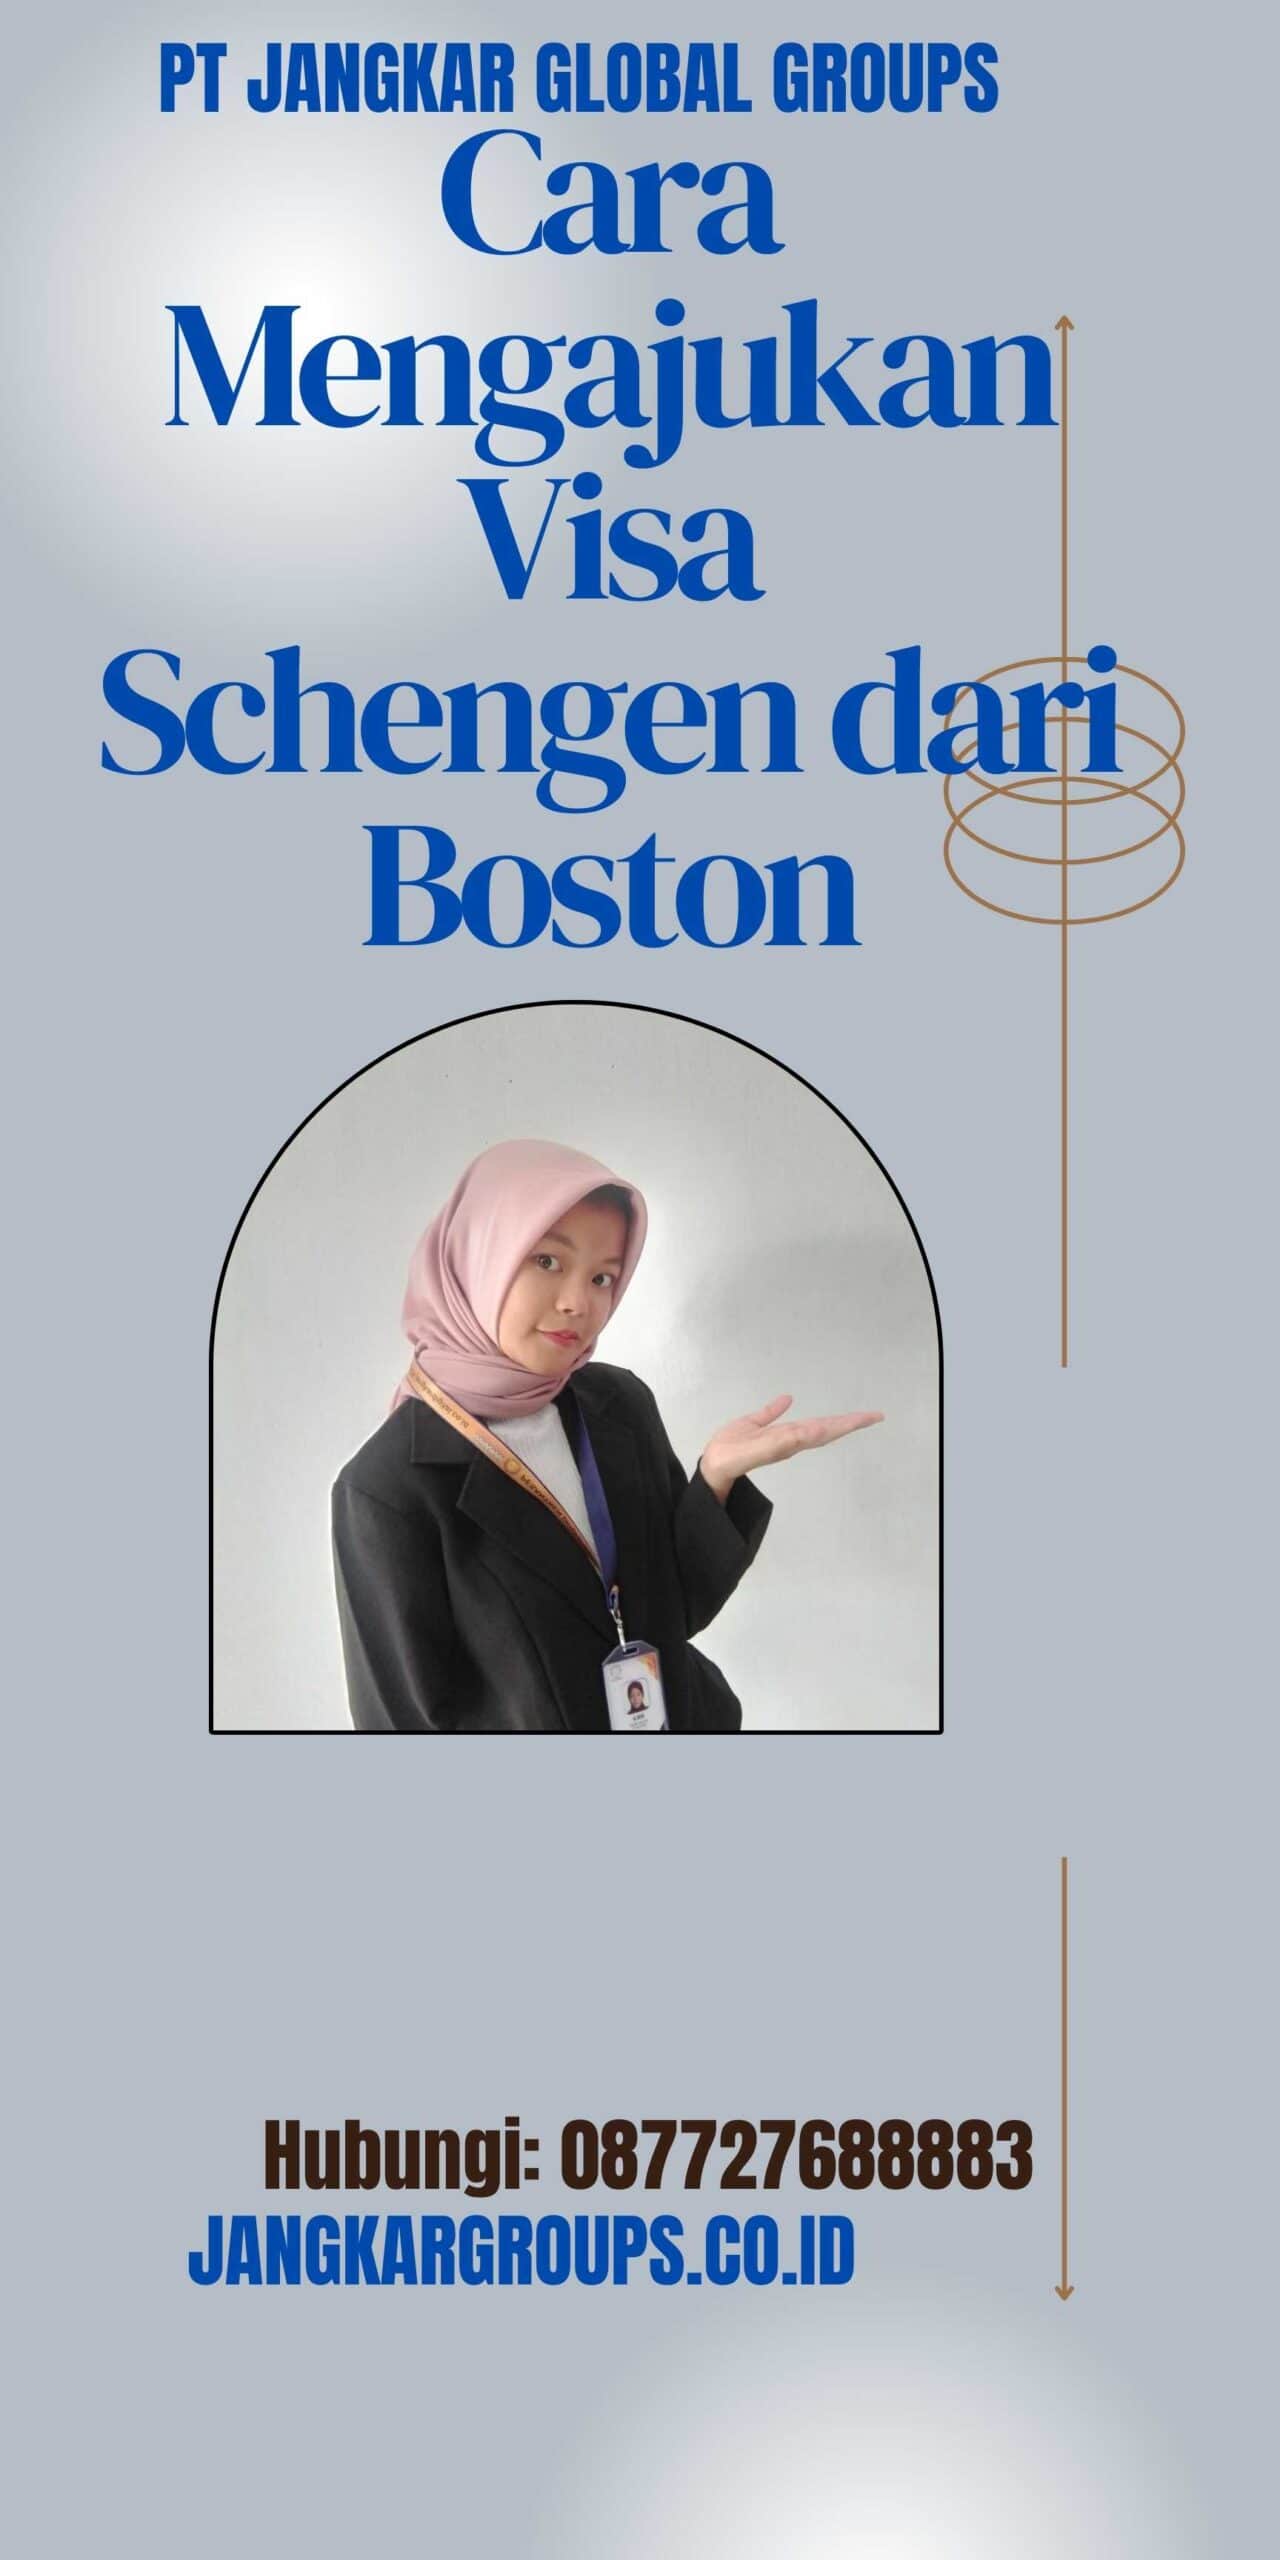 Cara Mengajukan Visa Schengen dari Boston